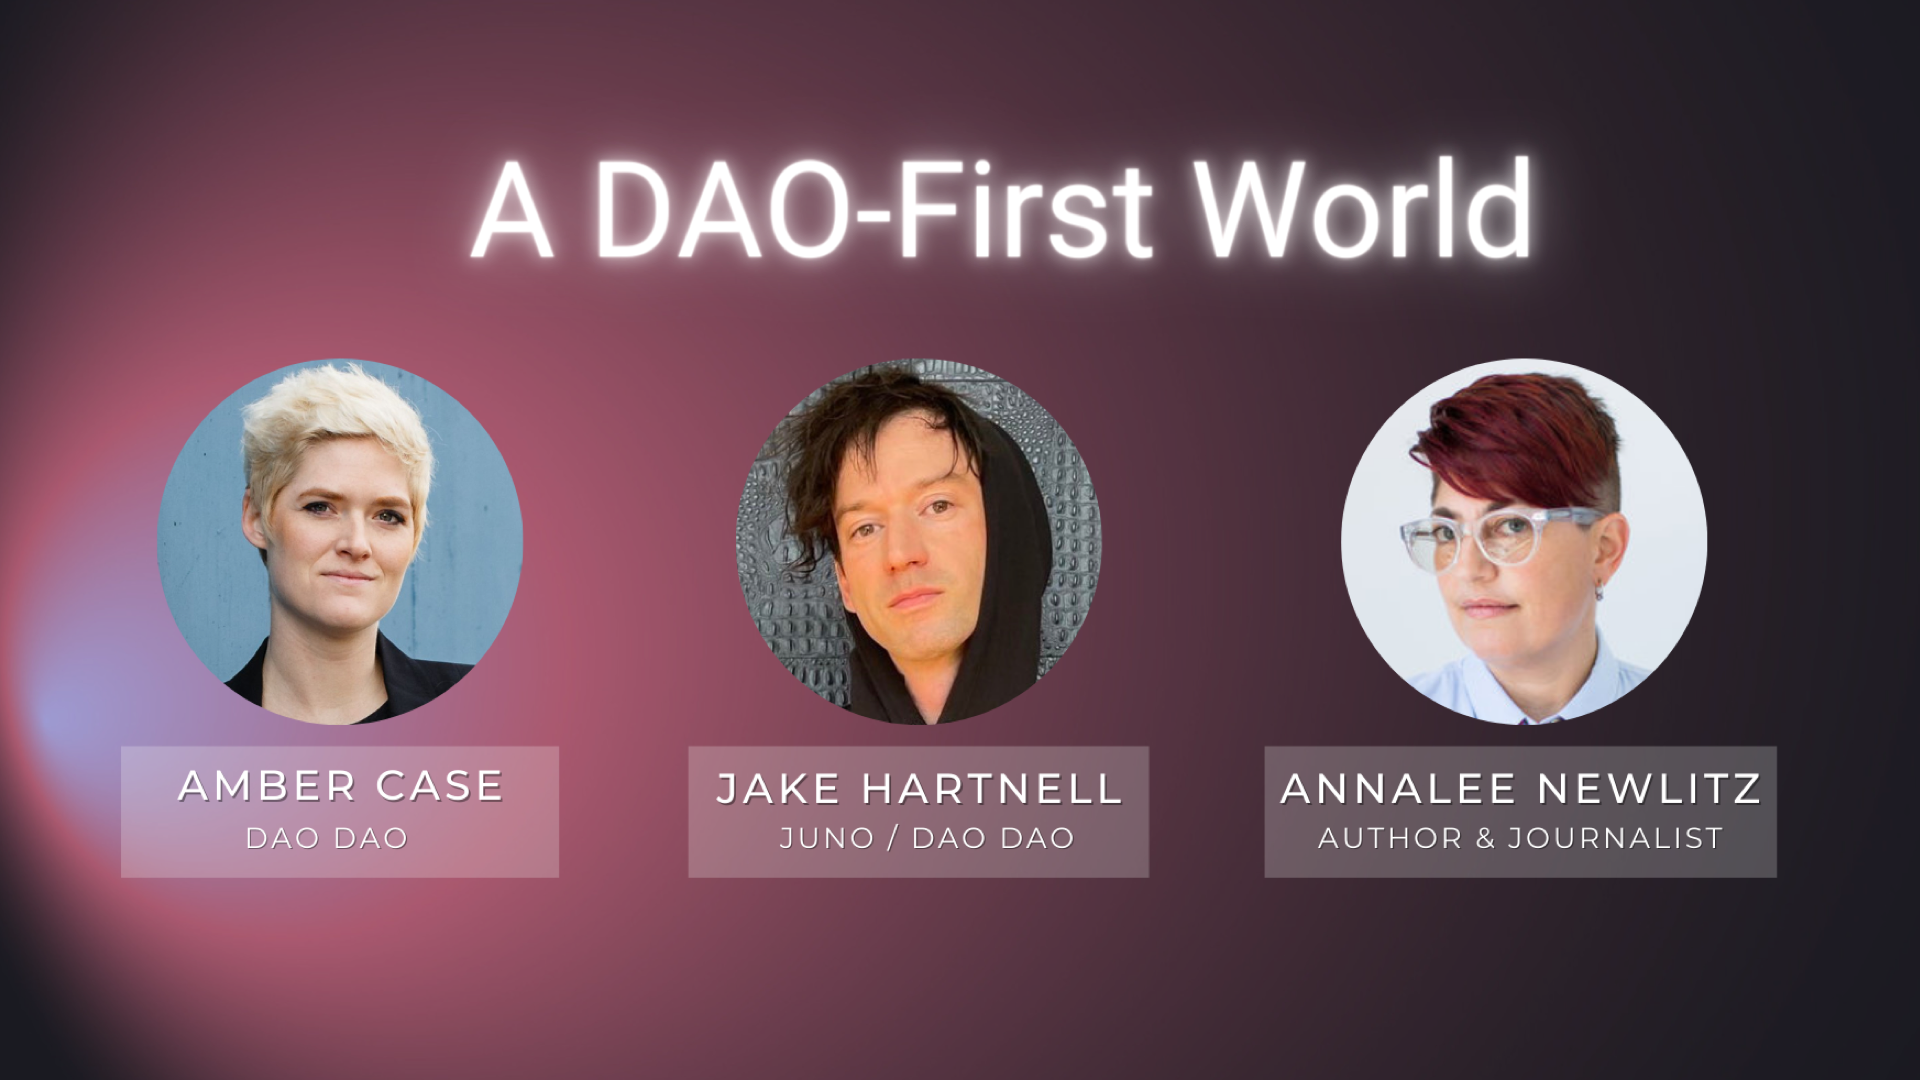 A DAO-First World